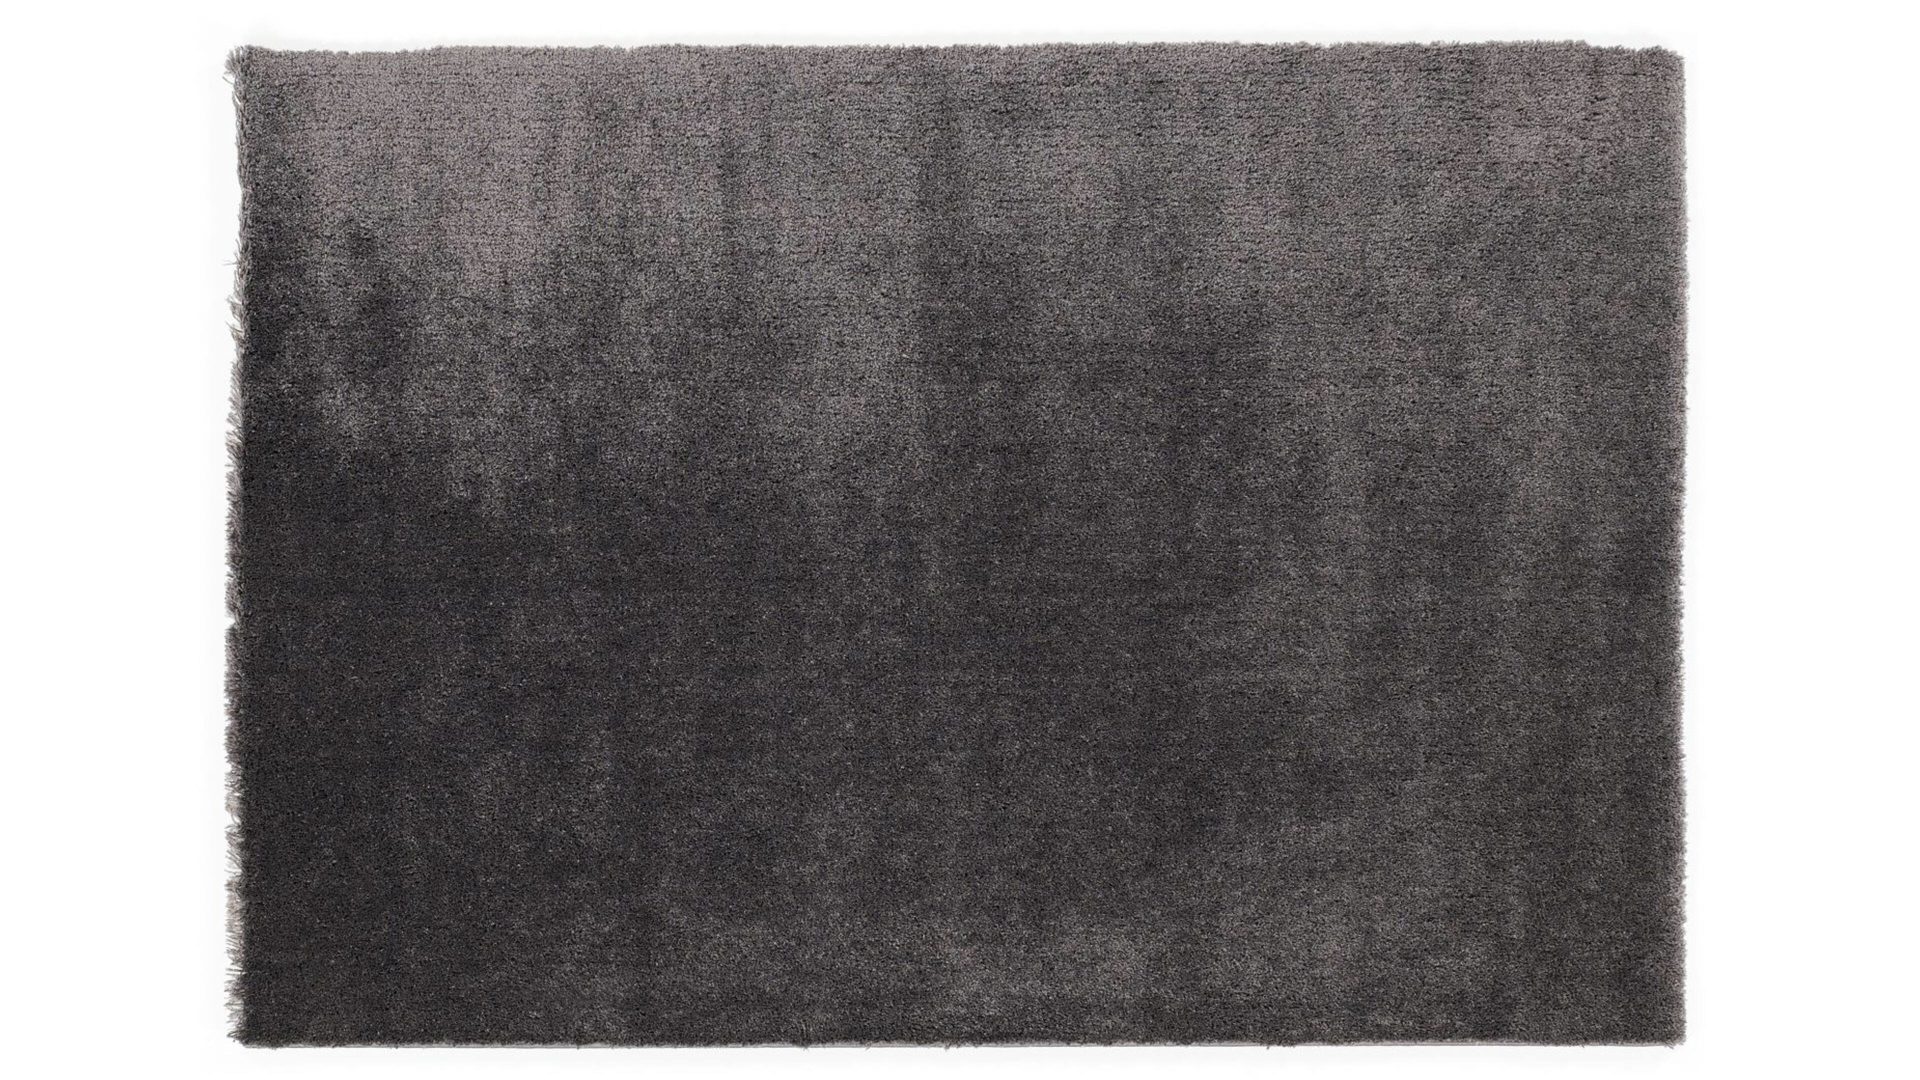 Shaggyteppich Oci aus Kunstfaser in Schwarz Shaggyteppich Royal Shaggy für Ihre Wohnaccessoires quarzfarbene Kunstfaser – ca. 160 x 230 cm